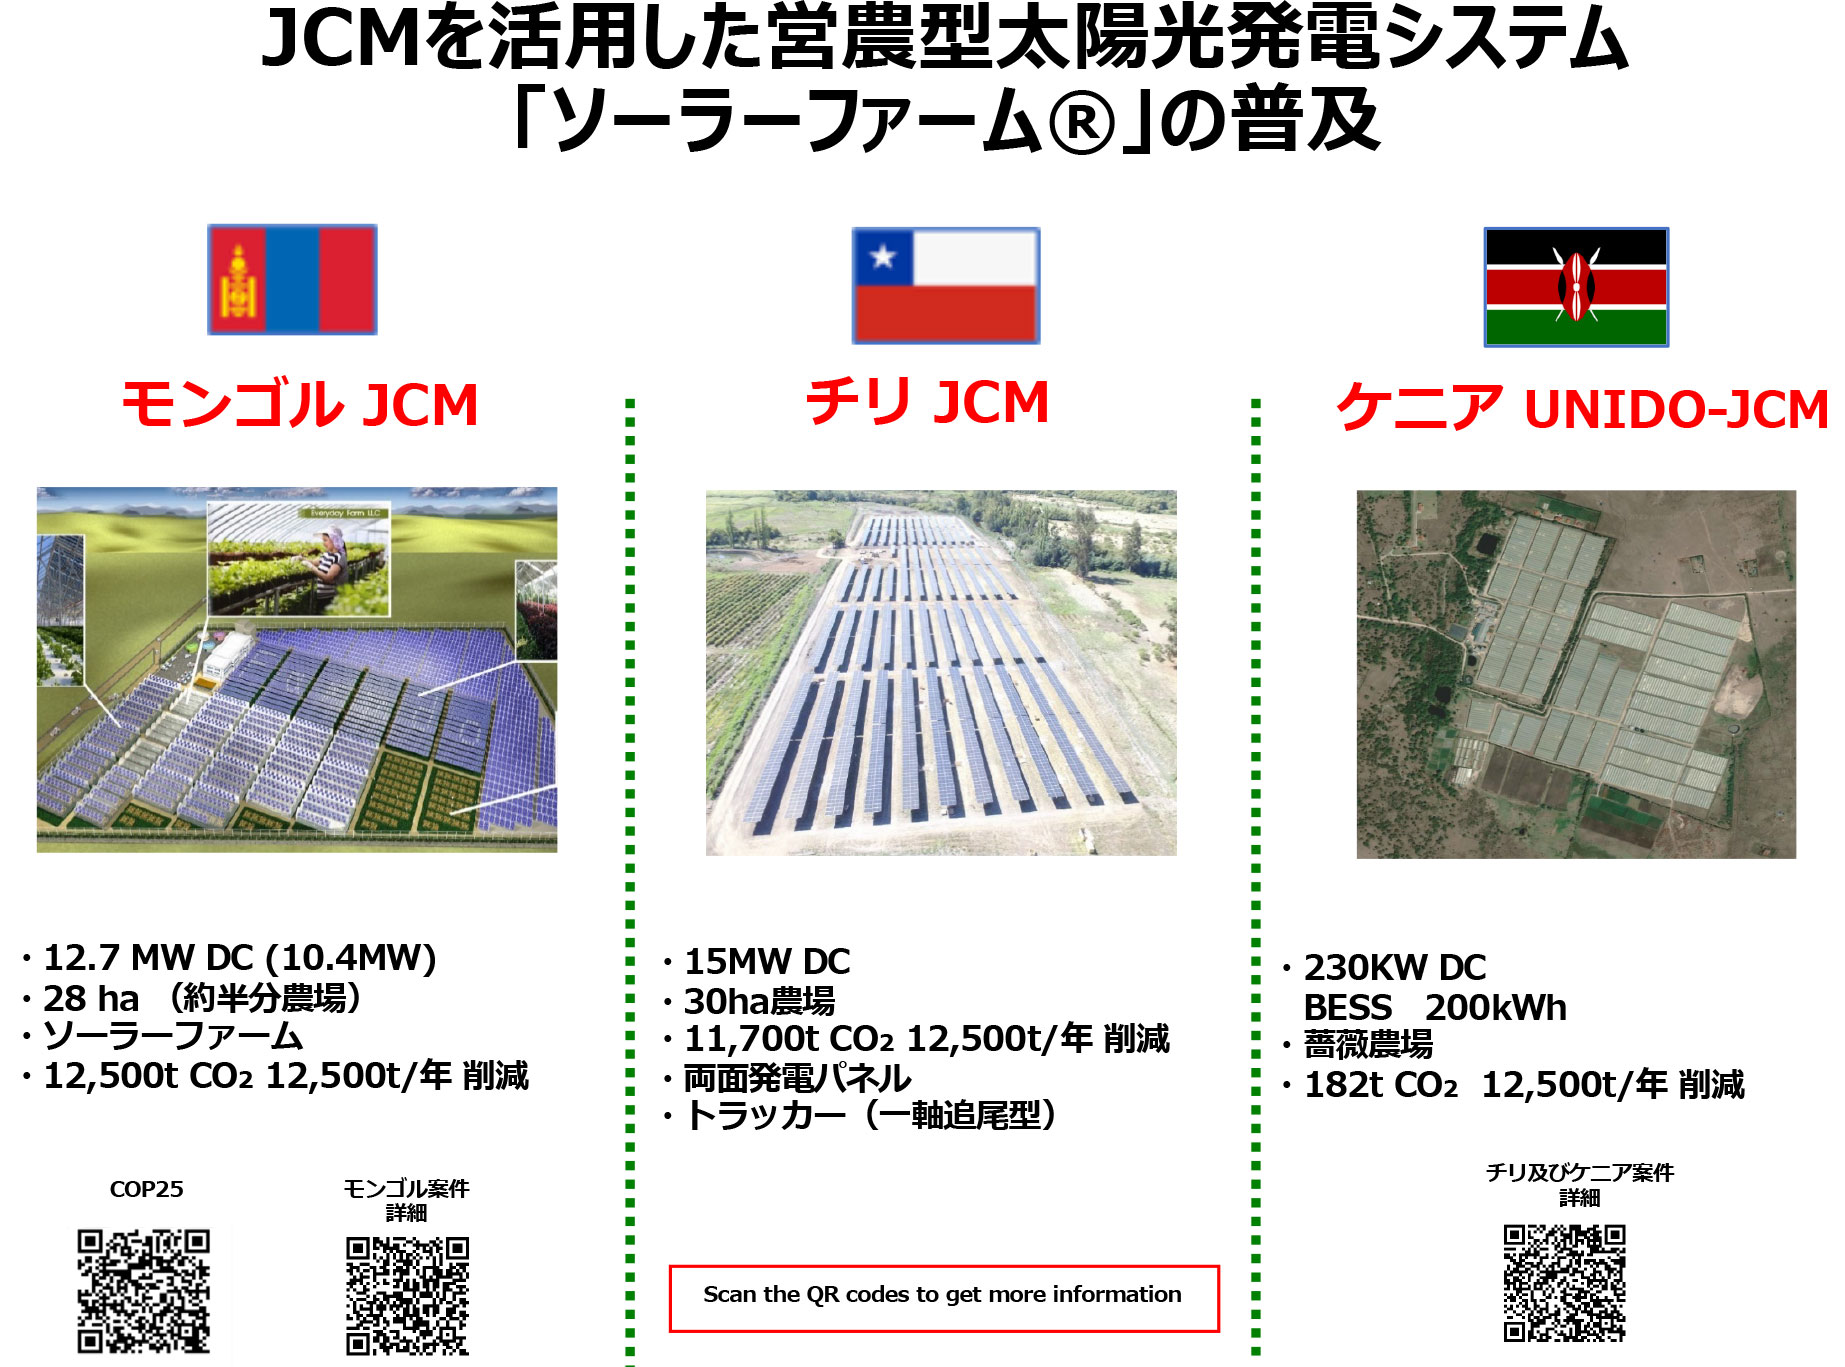 JCMを活用した営農型太陽光発電システム「ソーラーファーム®」の普及